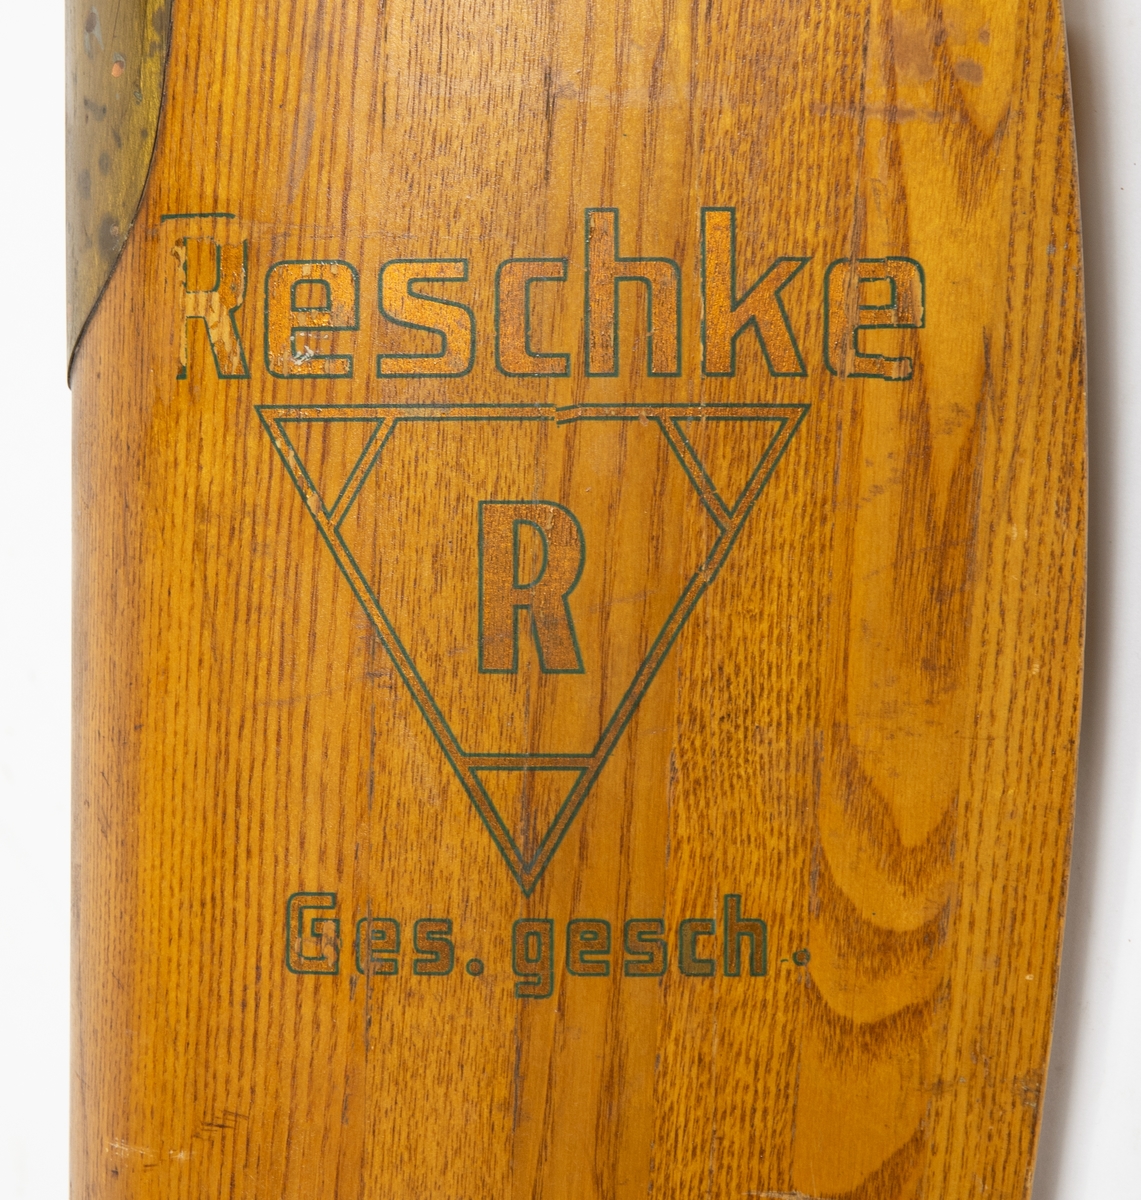 Tvåbladig träpropeller av märke Reschke. Propellern är mässingsskodd.